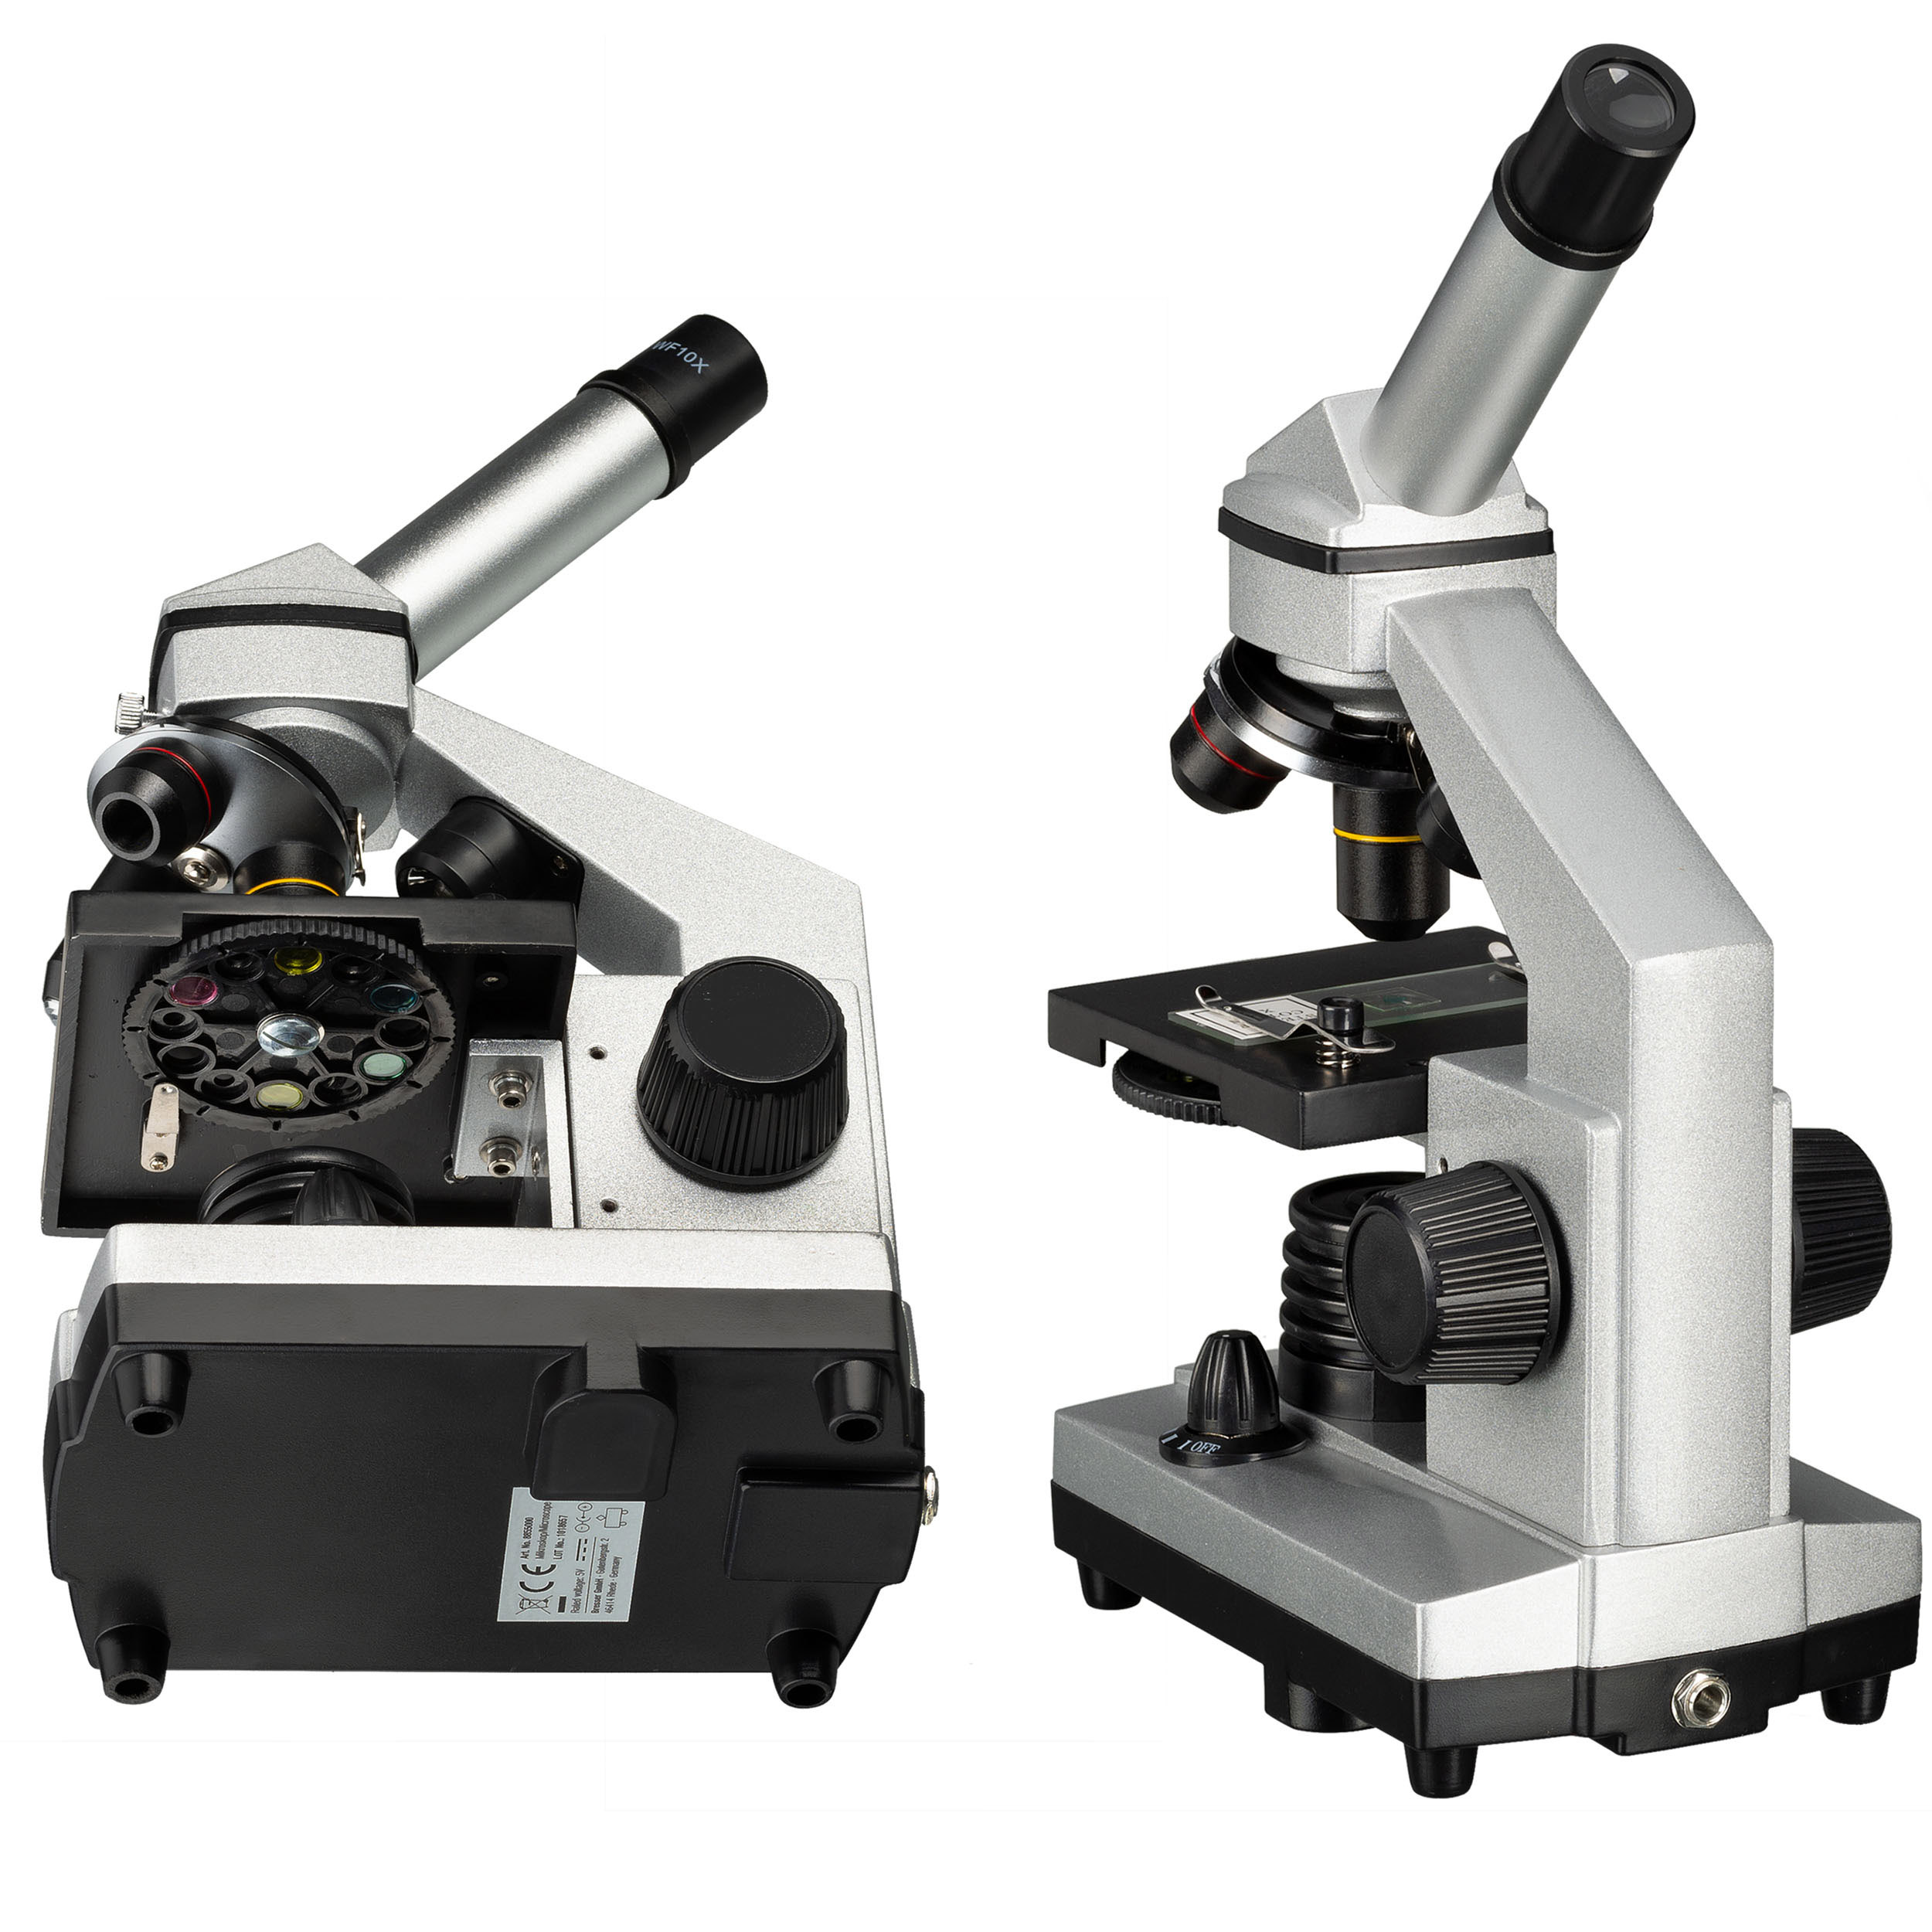 BRESSER JUNIOR Biolux CA 40x-1024x Microscope incl. Smartphone Holder